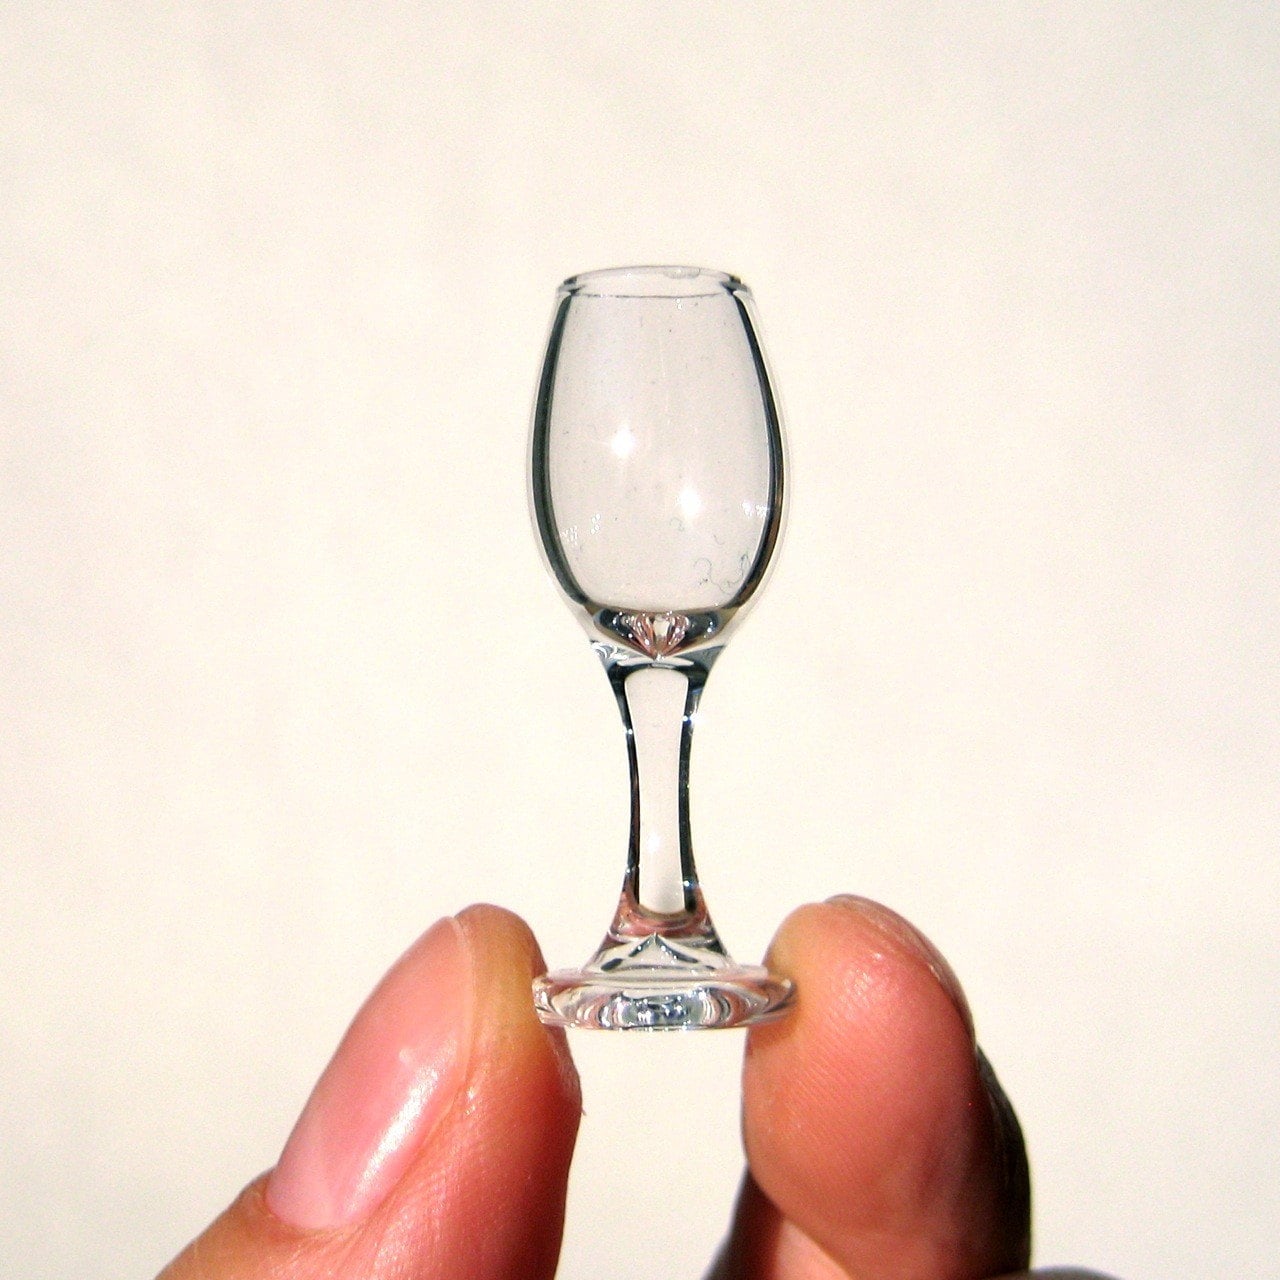 miniature wine glasses